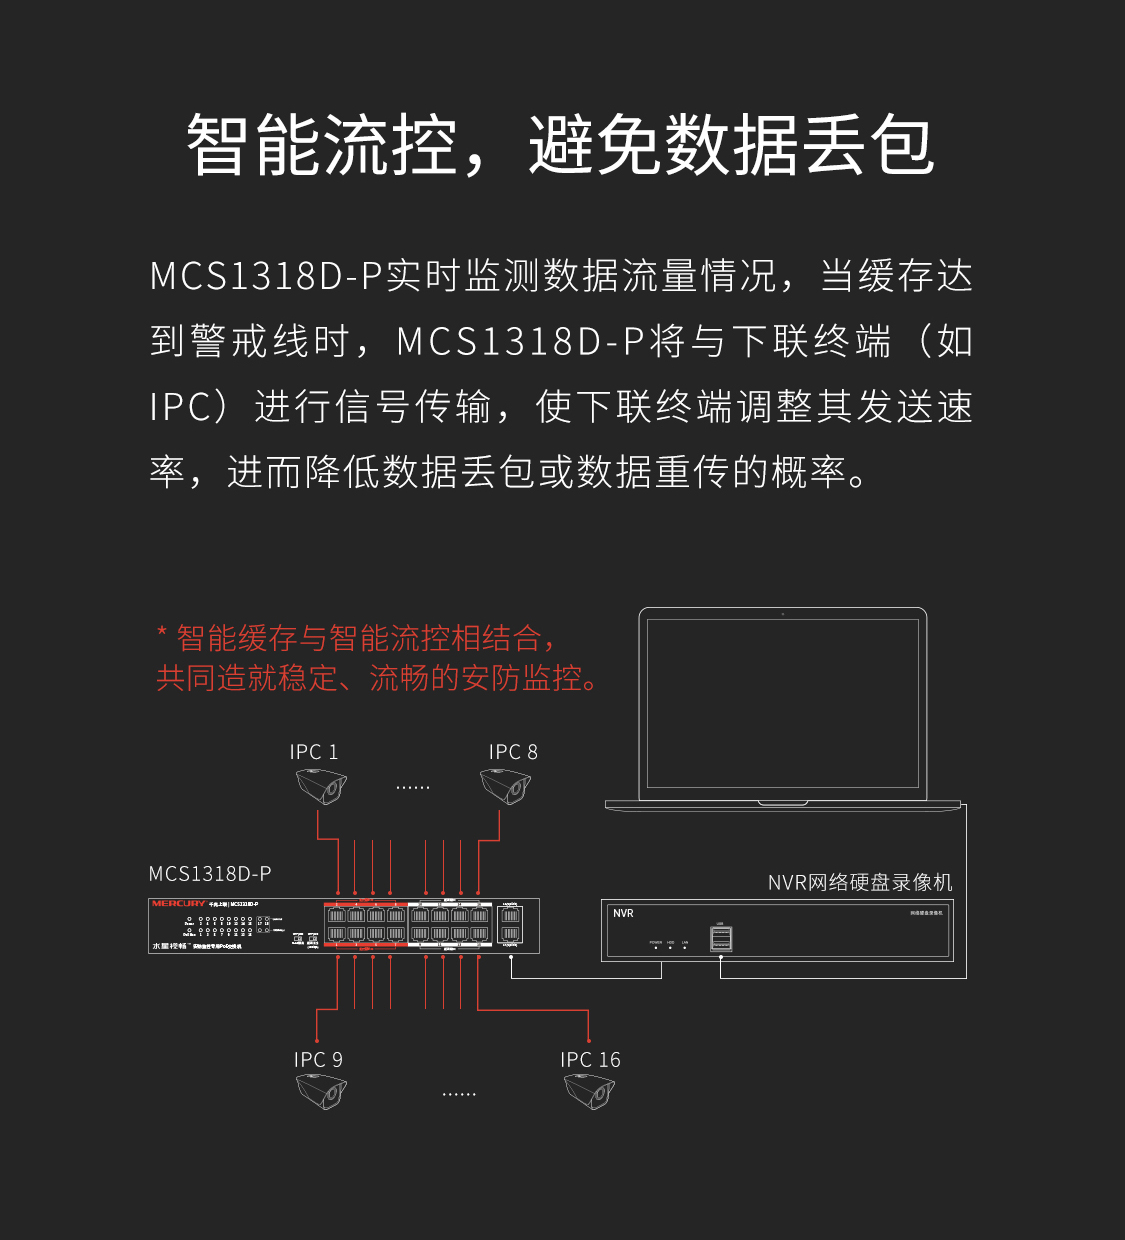 MCS1318D-P